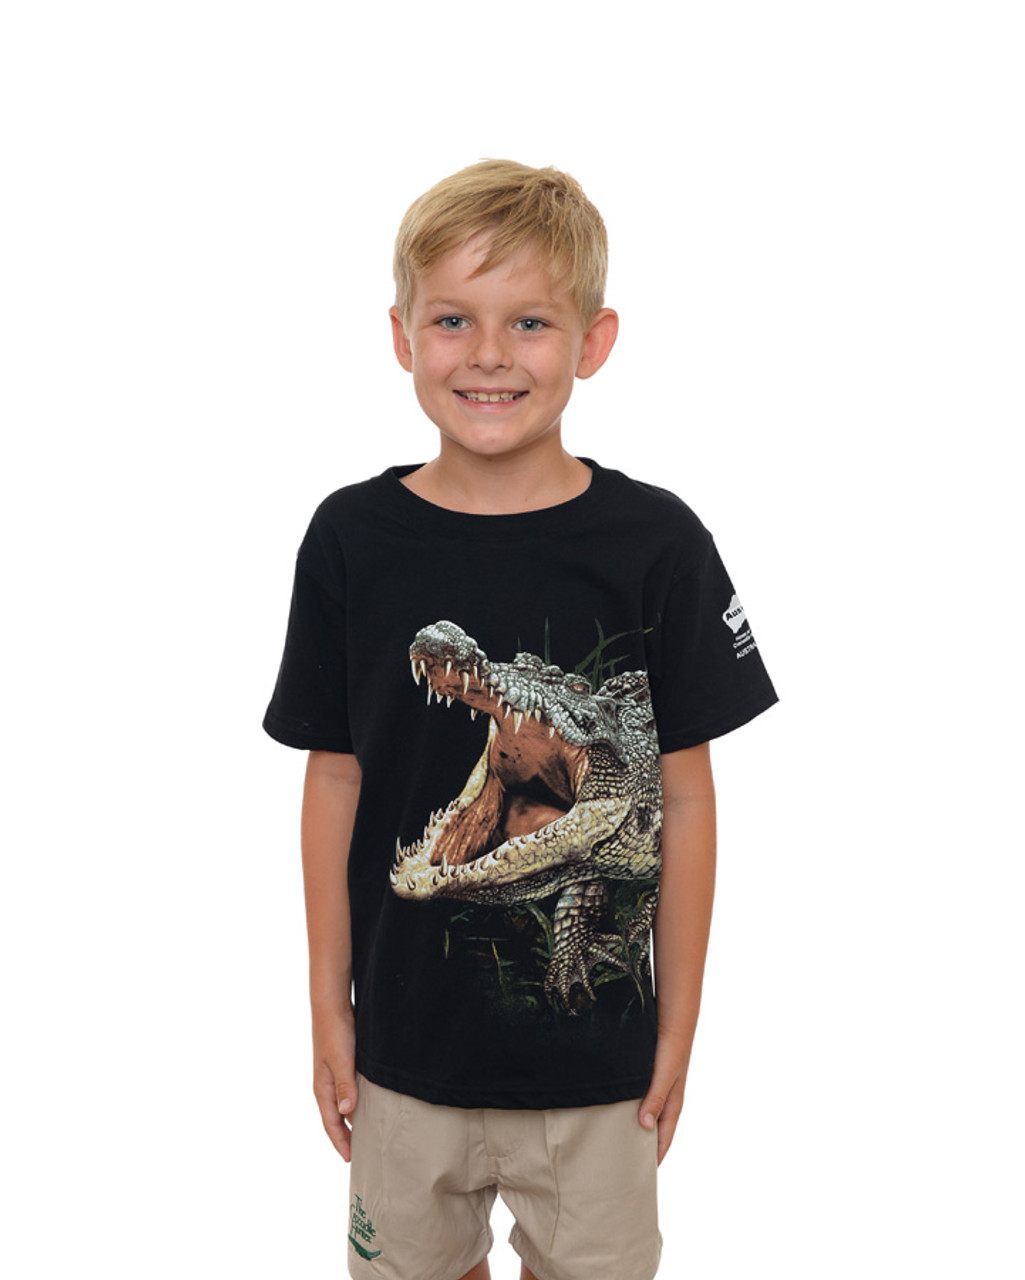 Australia Zoo - Crocodile T-Shirt - Kids